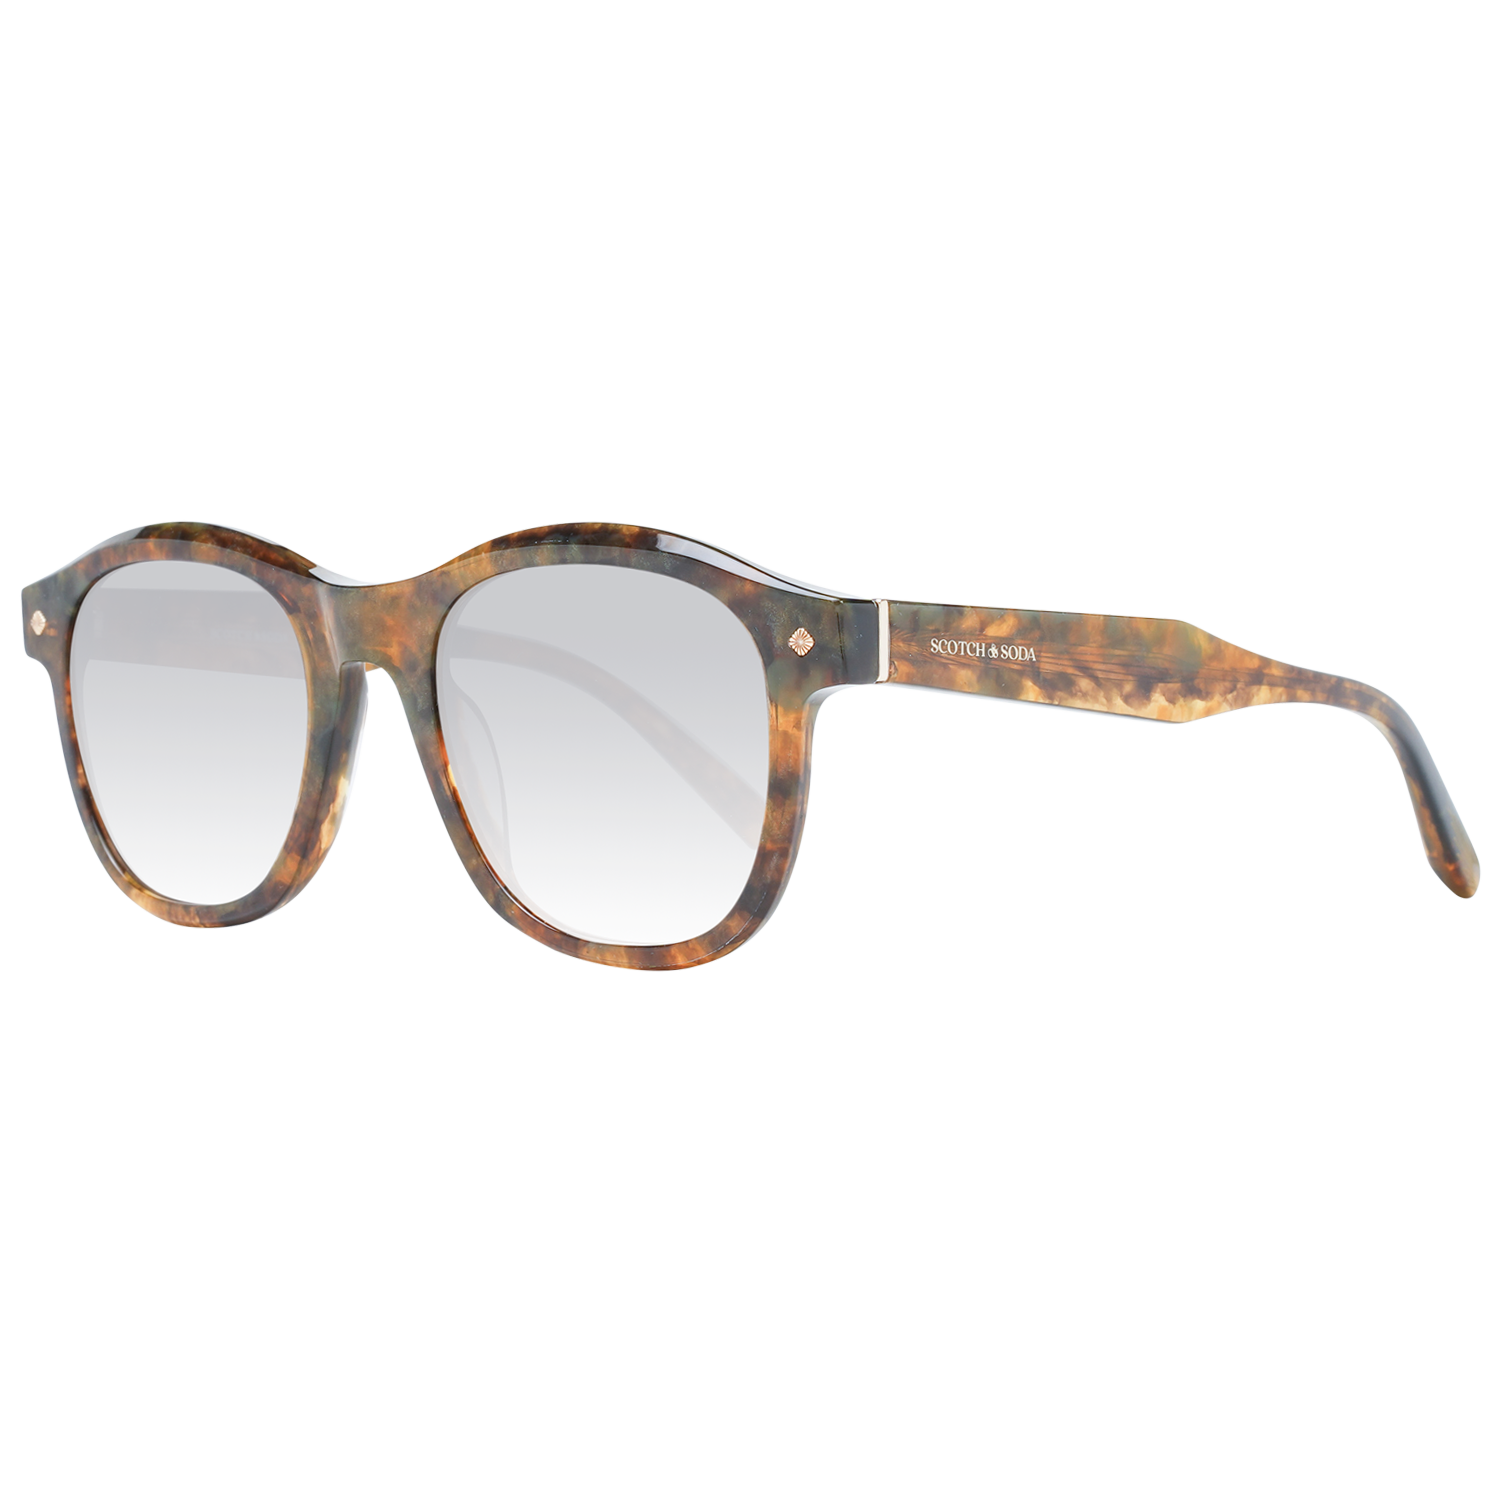 Pánské sluneční brýle Scotch & Soda SS7016 501 50